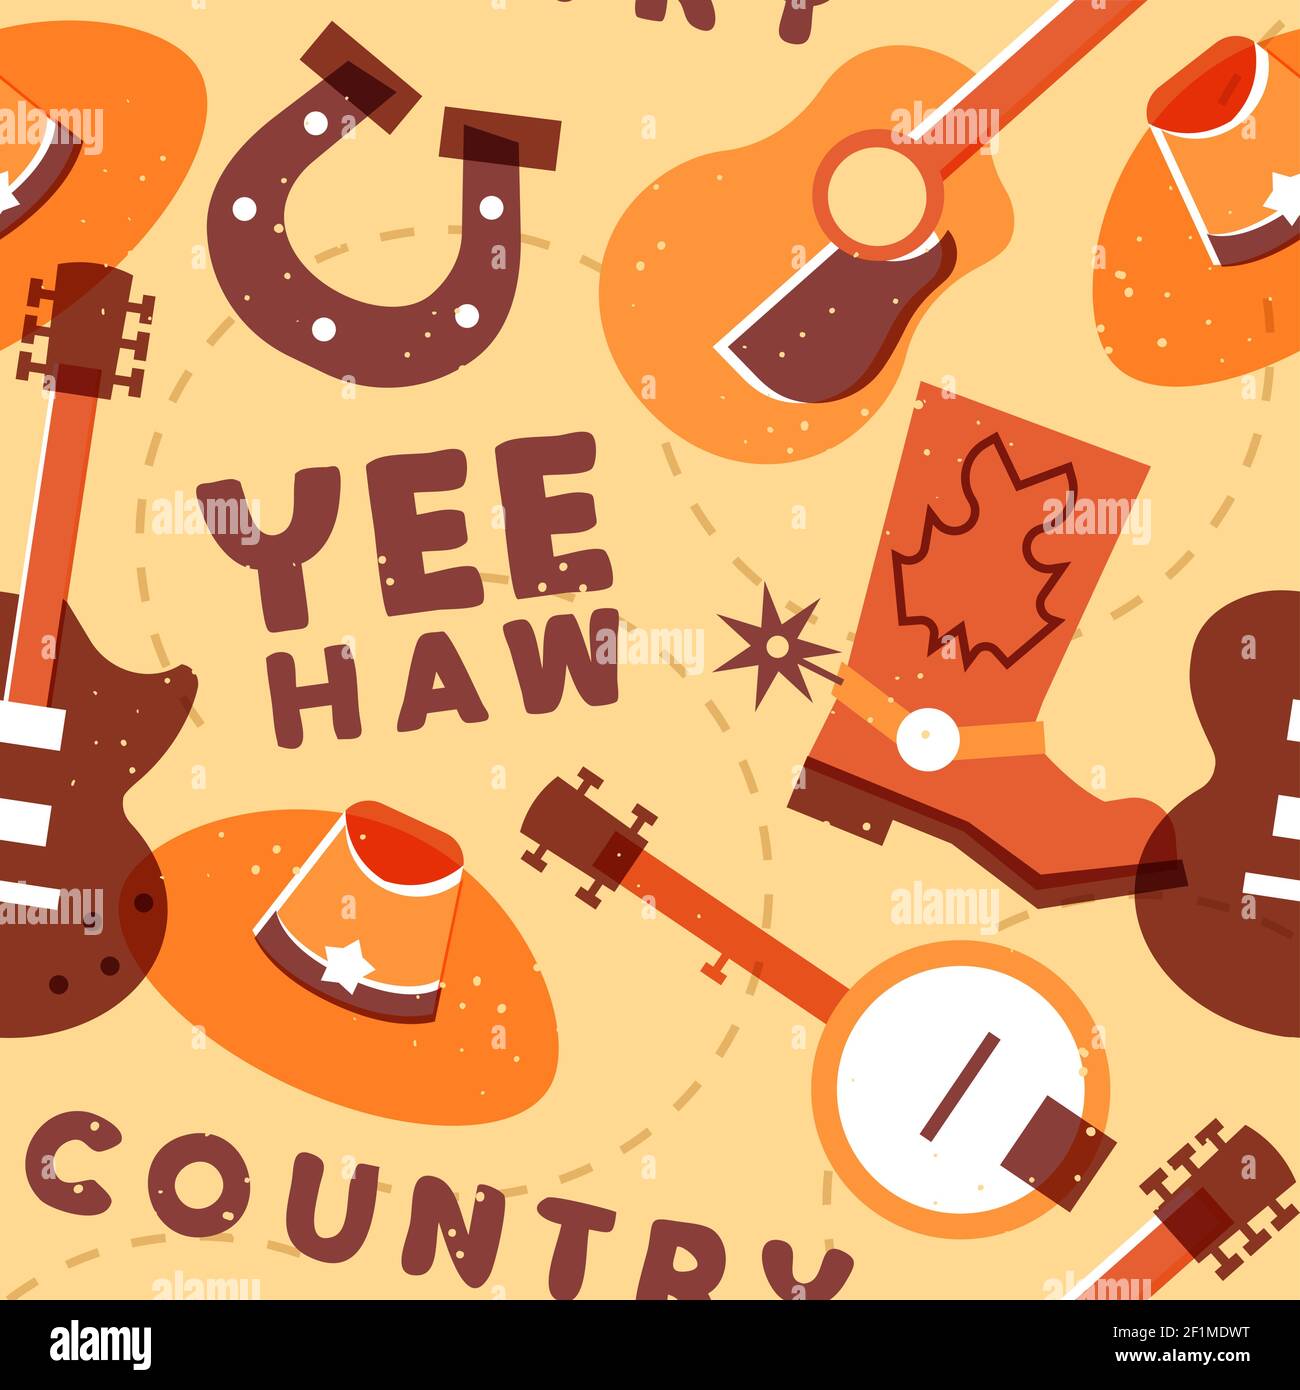 Country Musik nahtlose Musterillustration, bunte musikalische Ikone Hintergrunddesign mit Gitarre, Cowboy Hut, Stiefel, Banjo und mehr. Stock Vektor